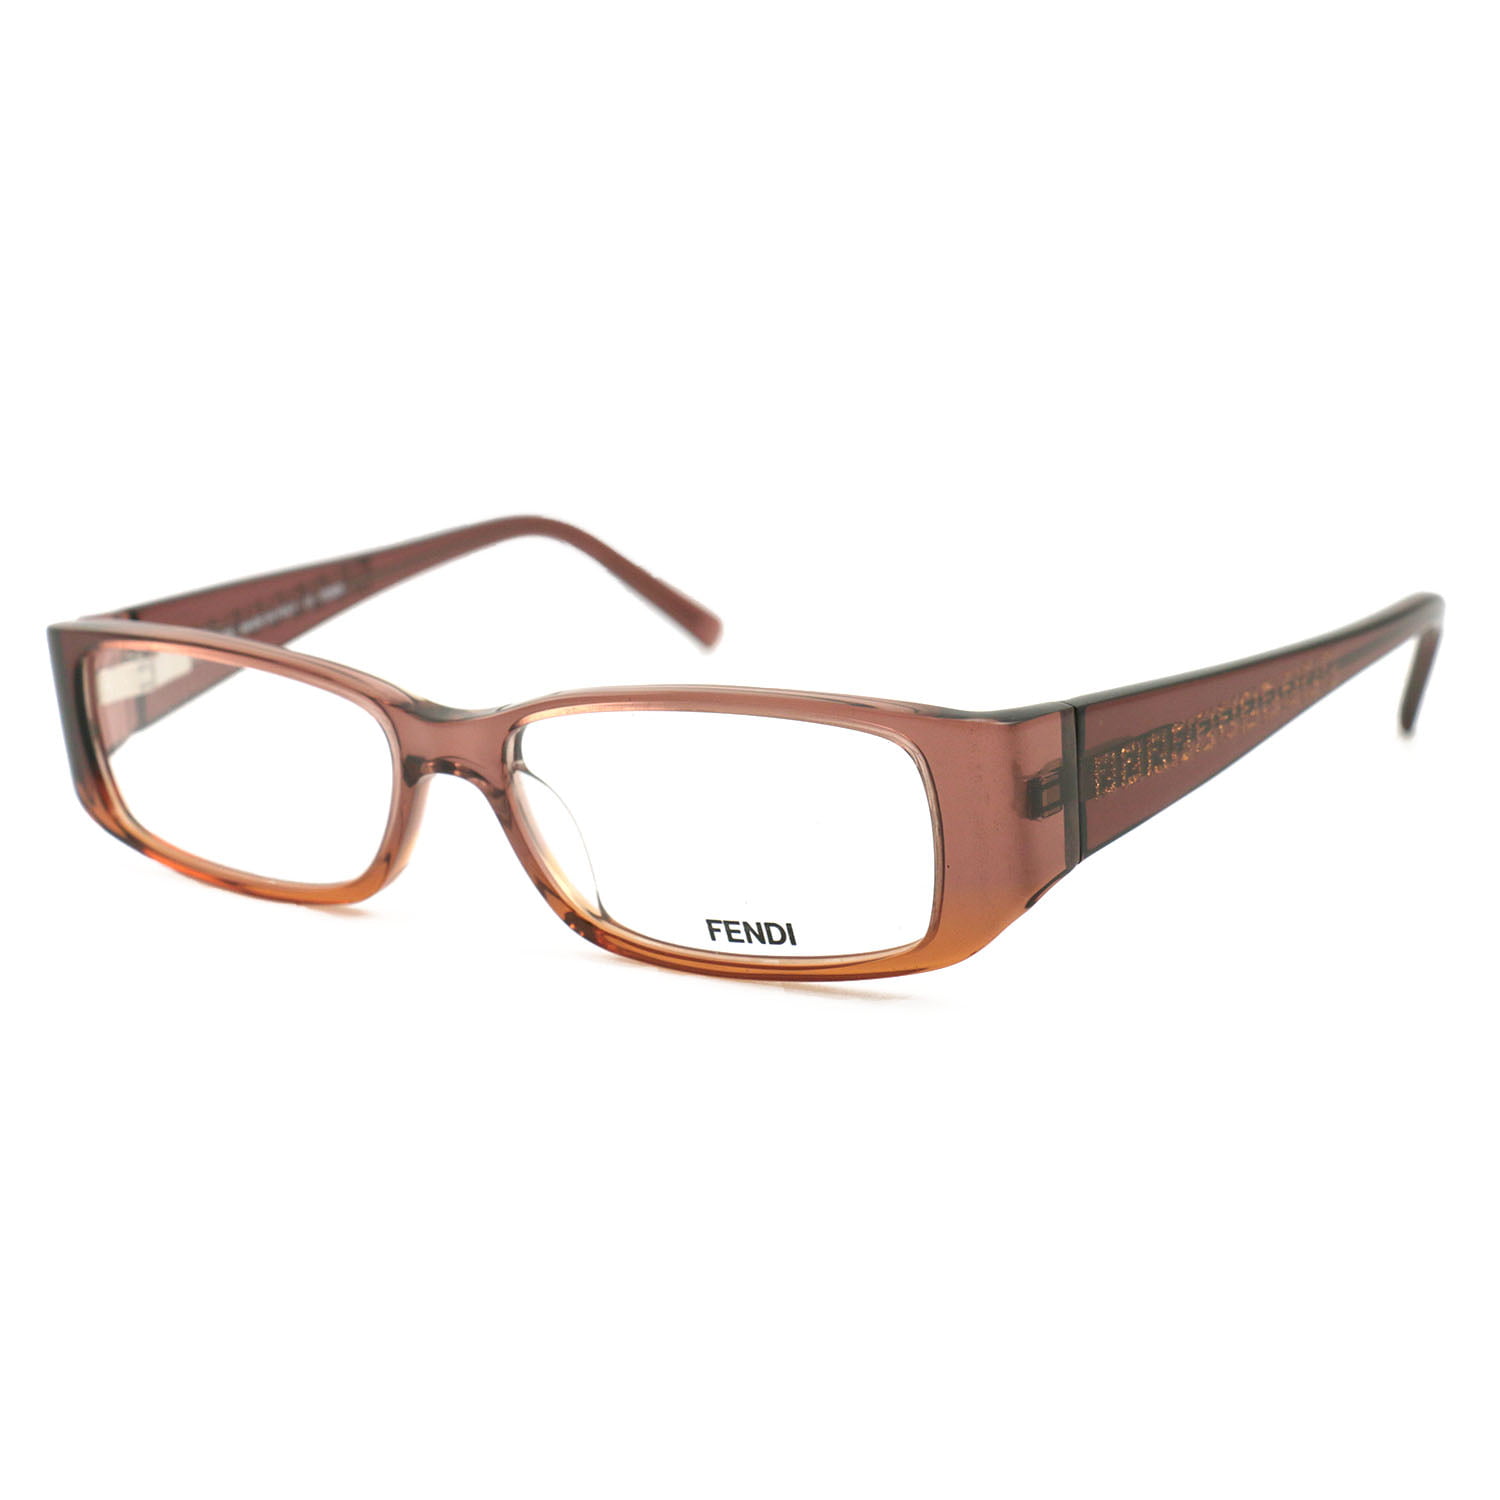 Fendi Women's Eyeglasses FF830 217 Brown 52 15 135 Frames Rectangle